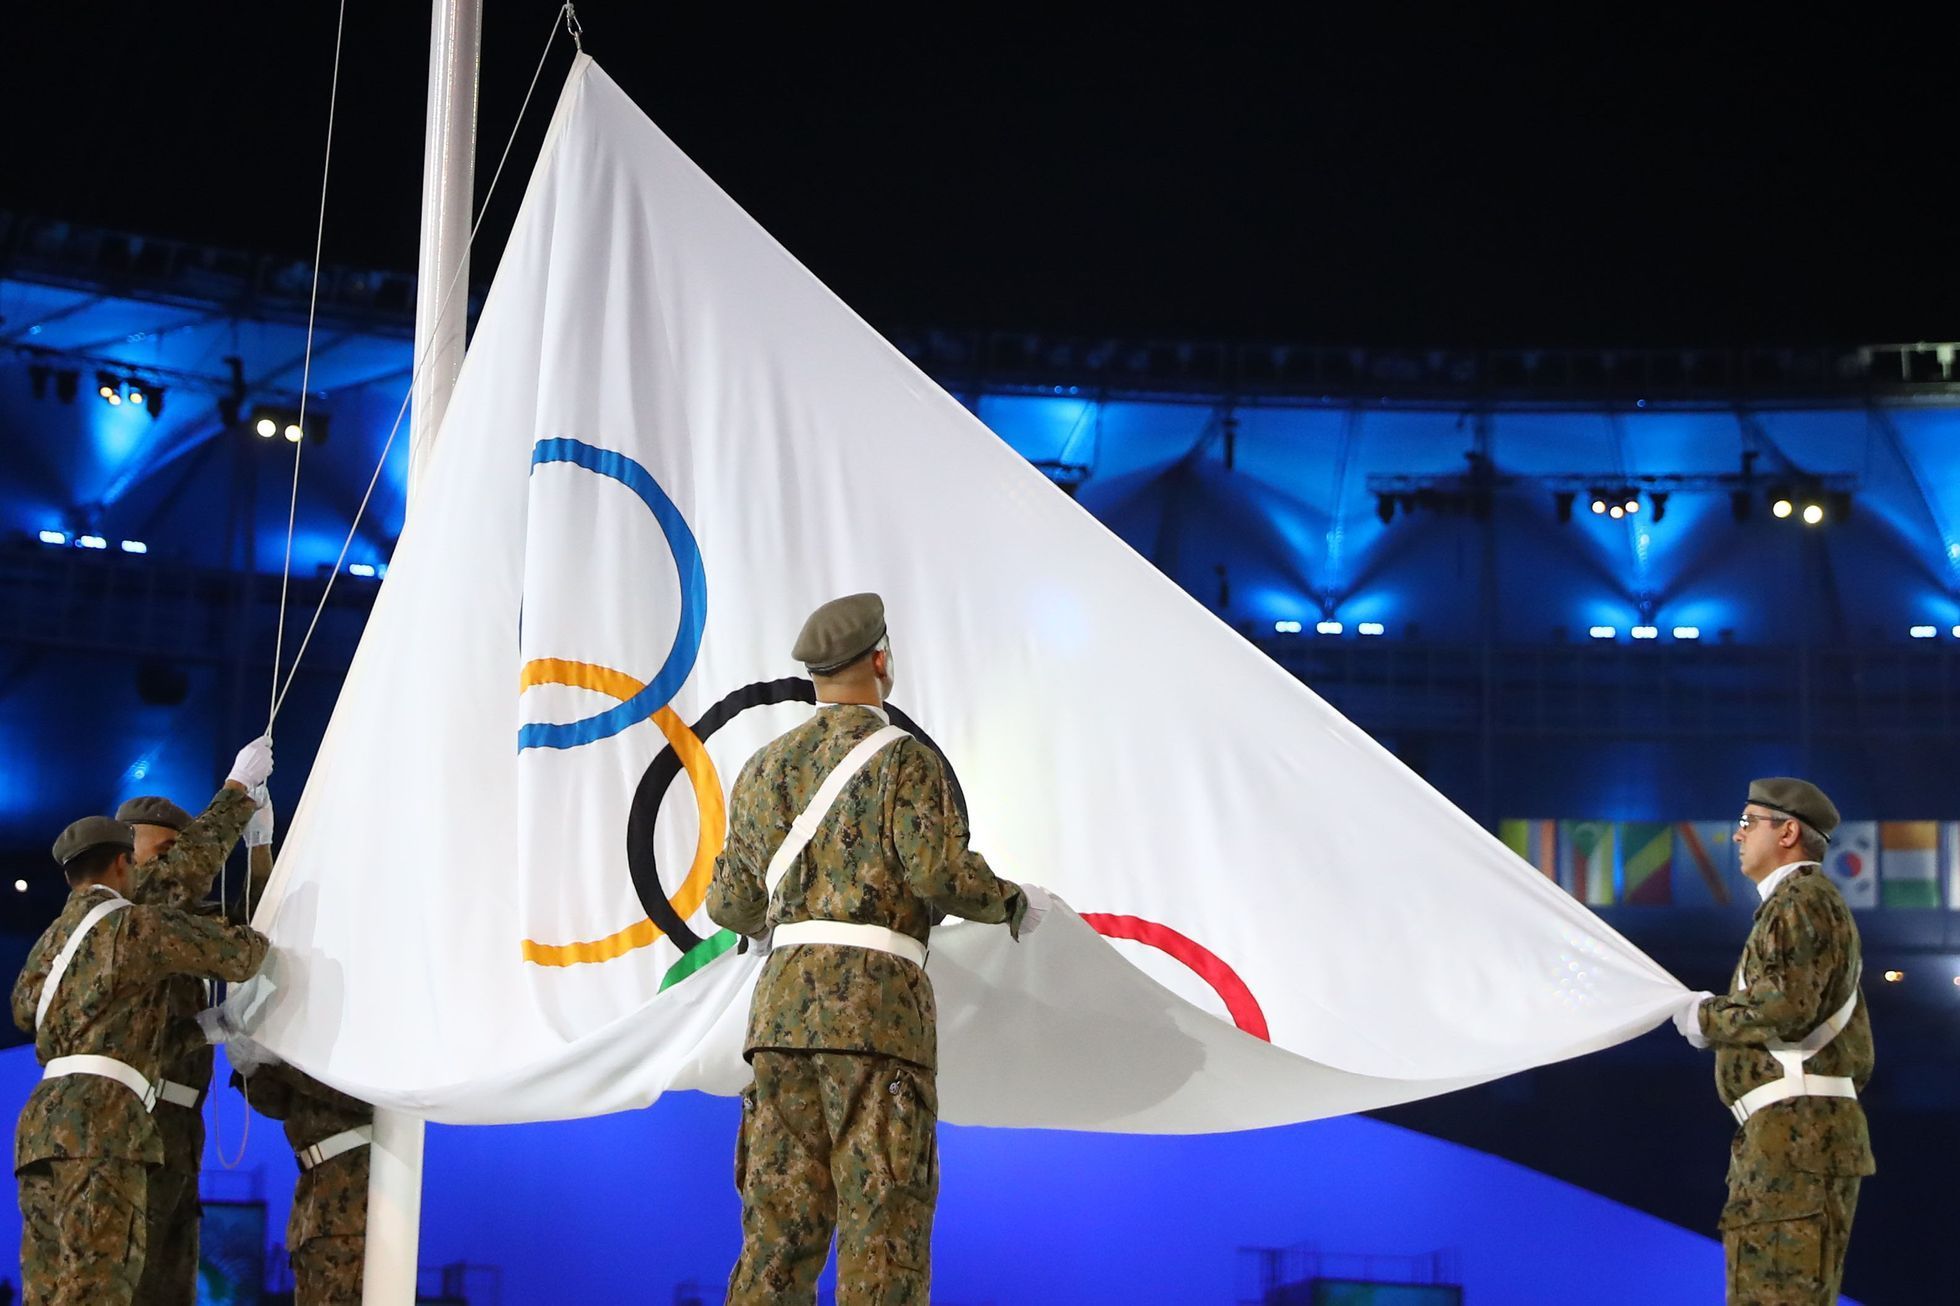 OH 2016, slavnostní zahájení: olympijská vlajka